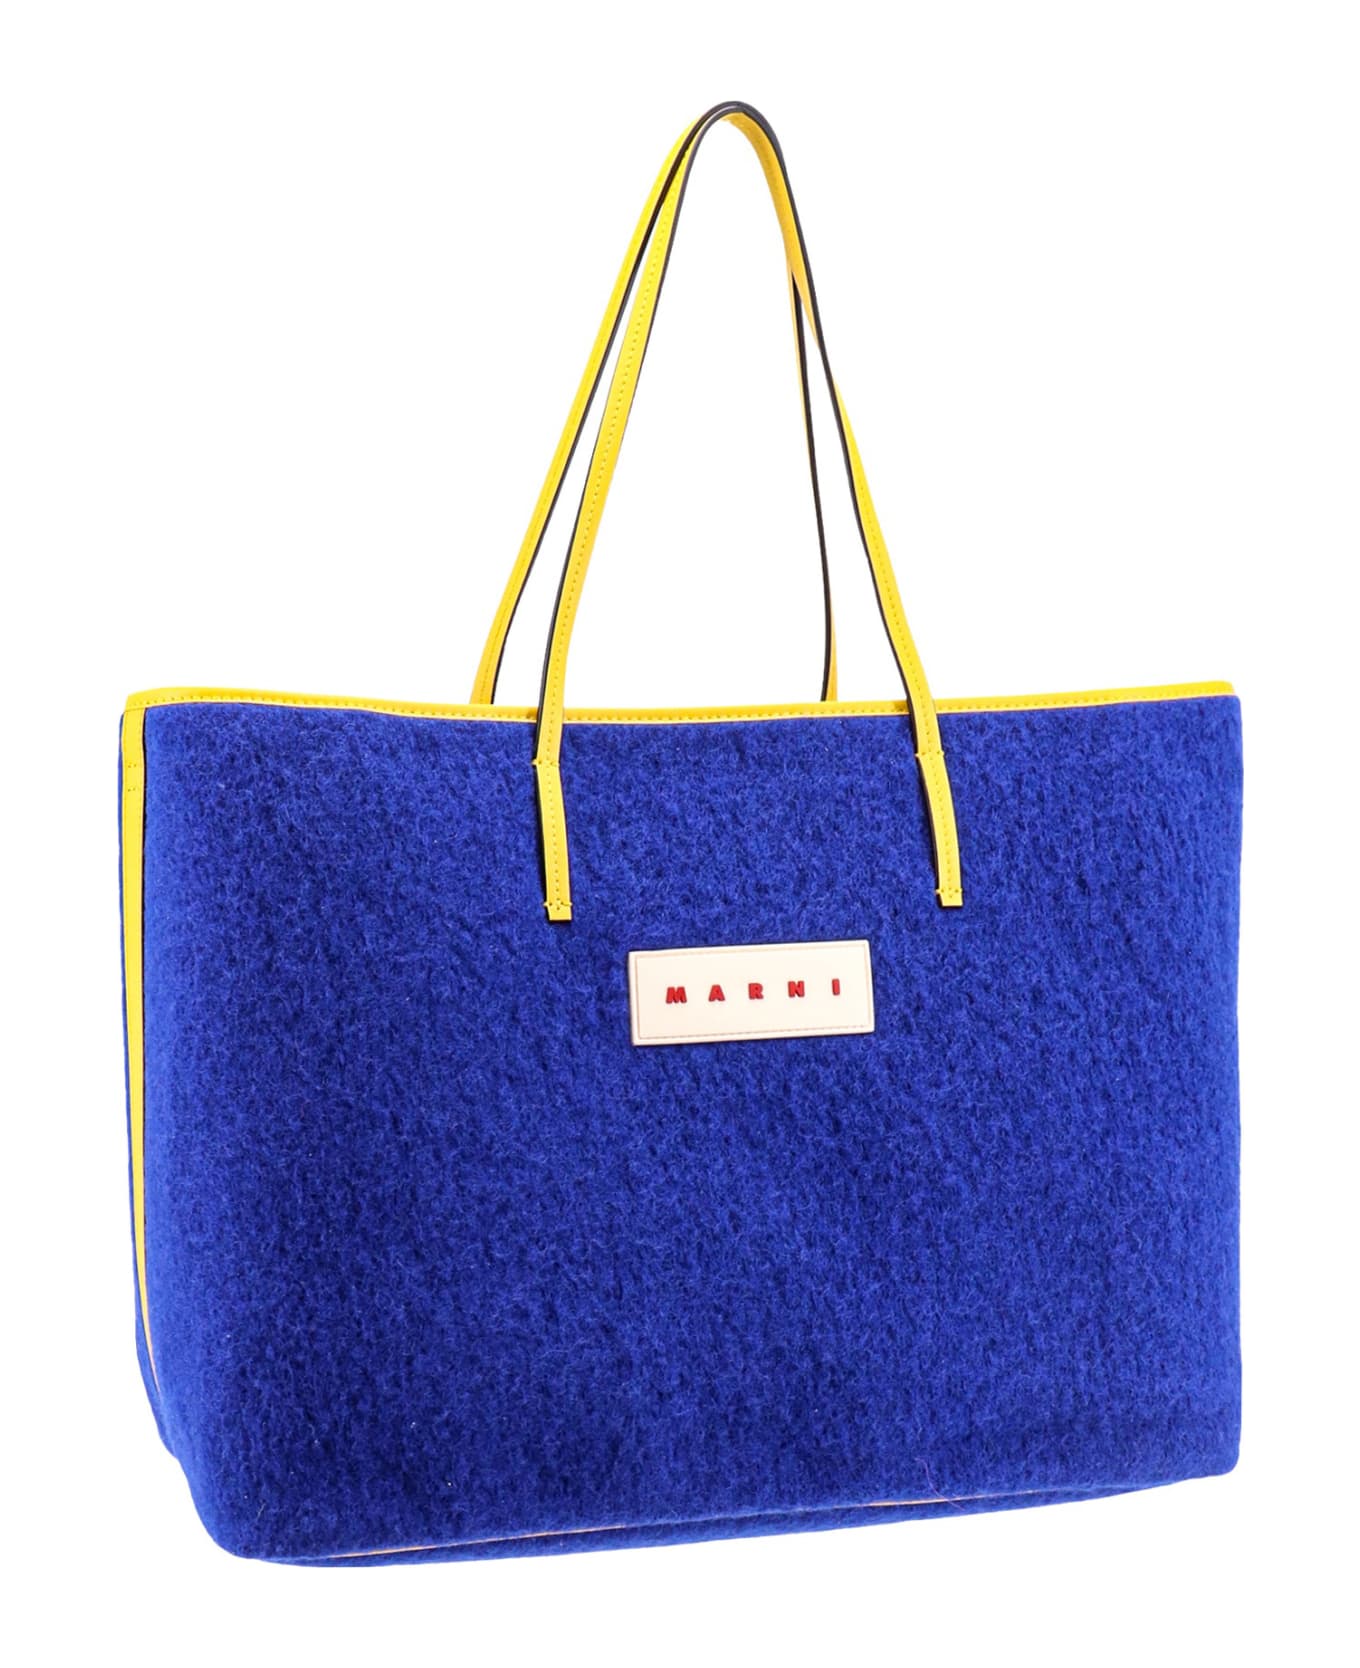 Marni Shoulder Bag - Royal Blue トートバッグ